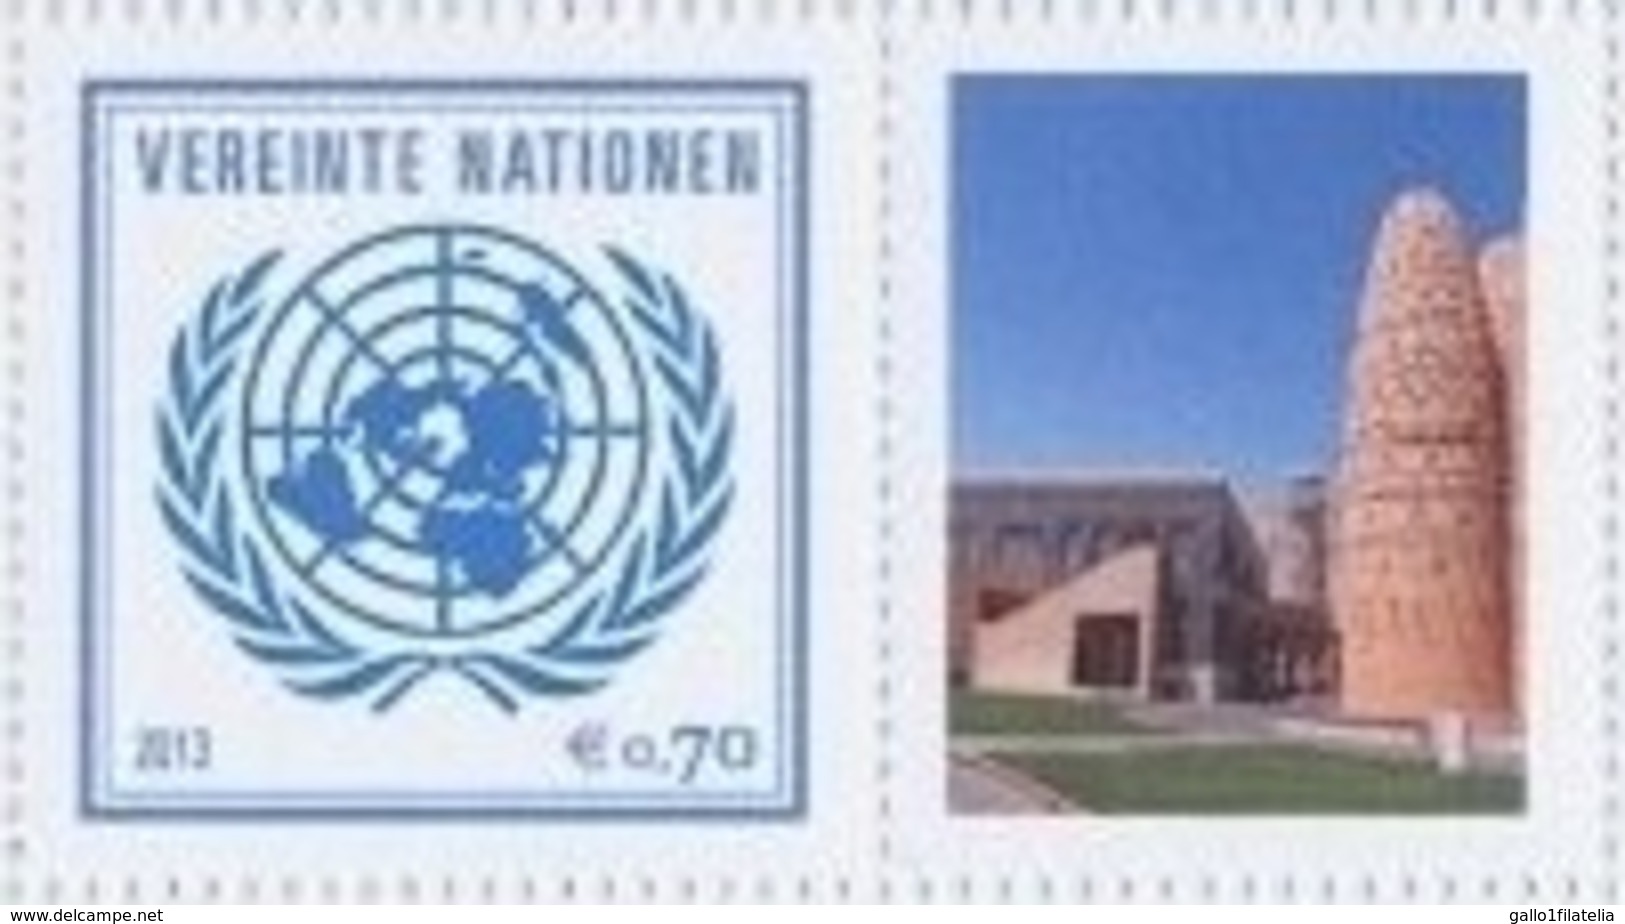 2013 - O.N.U. / UNITED NATIONS - VIENNA / WIEN - FRANCOBOLLI DA FOGLIO DI FRANCOBOLLI PERSONALIZZATI - DOHA 2015. MNH - Ongebruikt